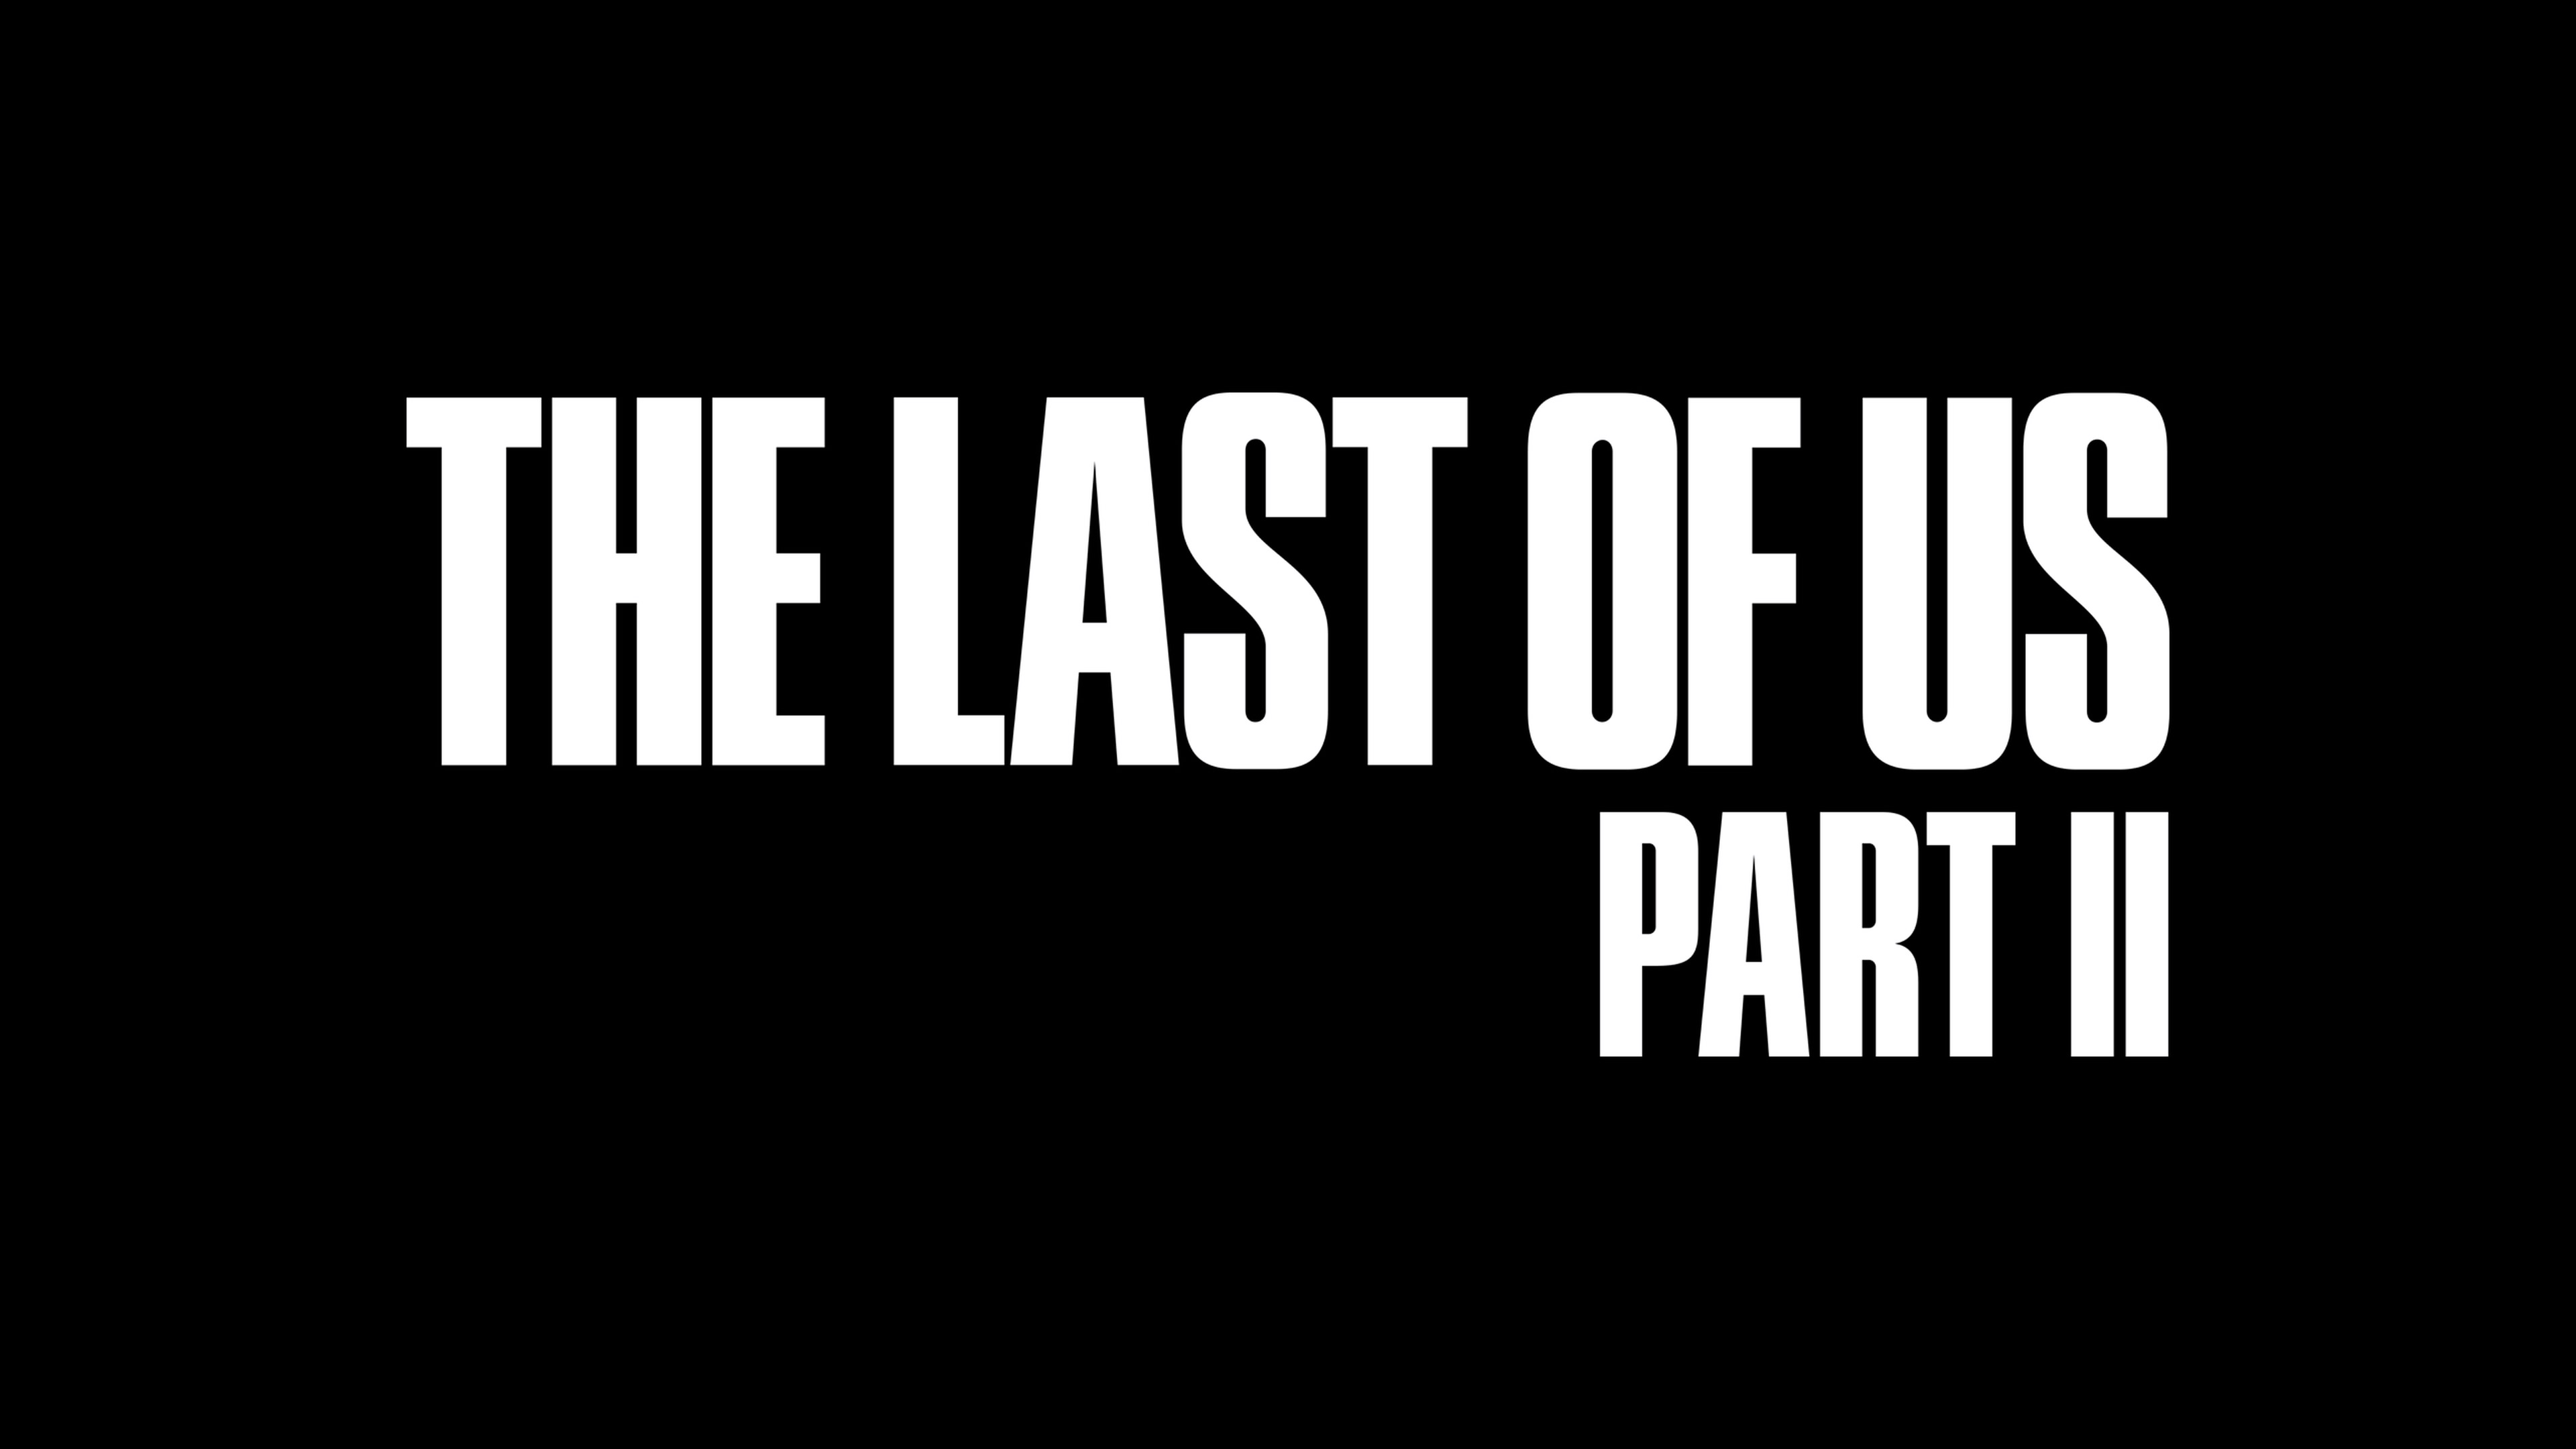 《最后的生还者2》更加大胆和激进的探讨了道德的主题，只是结果不再另所有人满意了